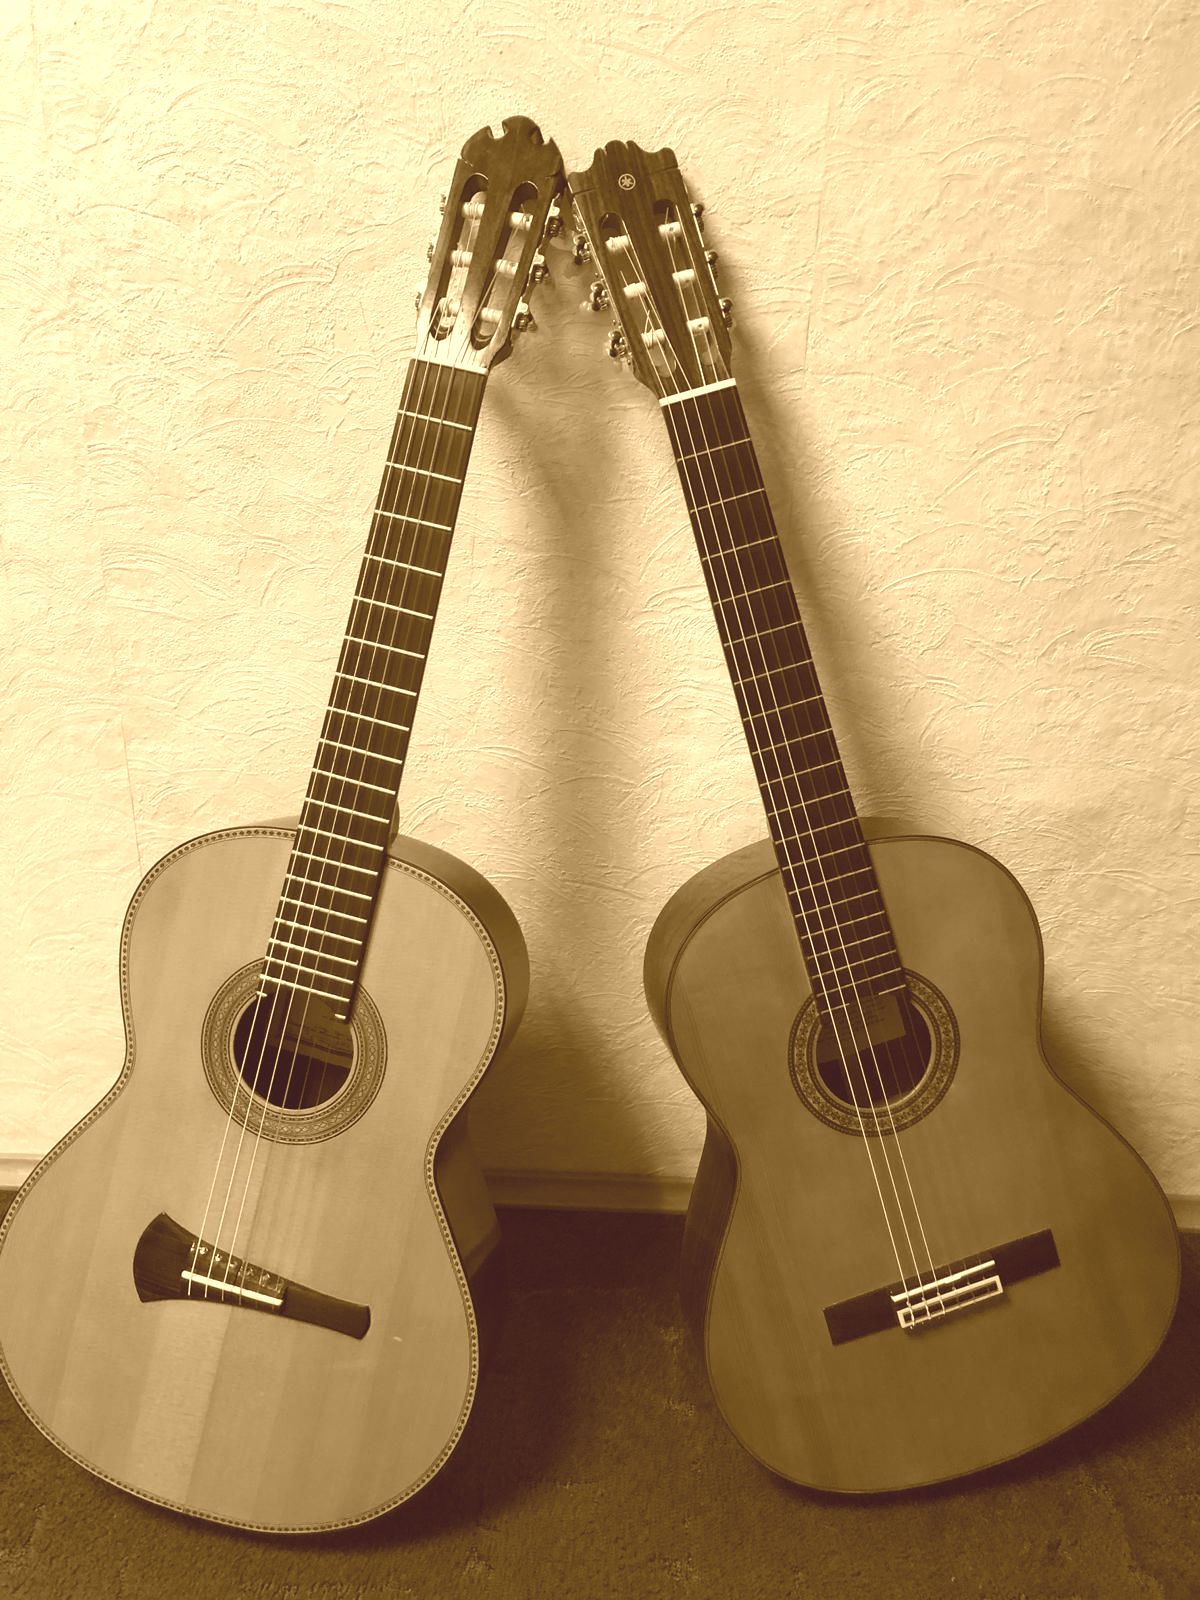 Bild mit 2 Gitarren